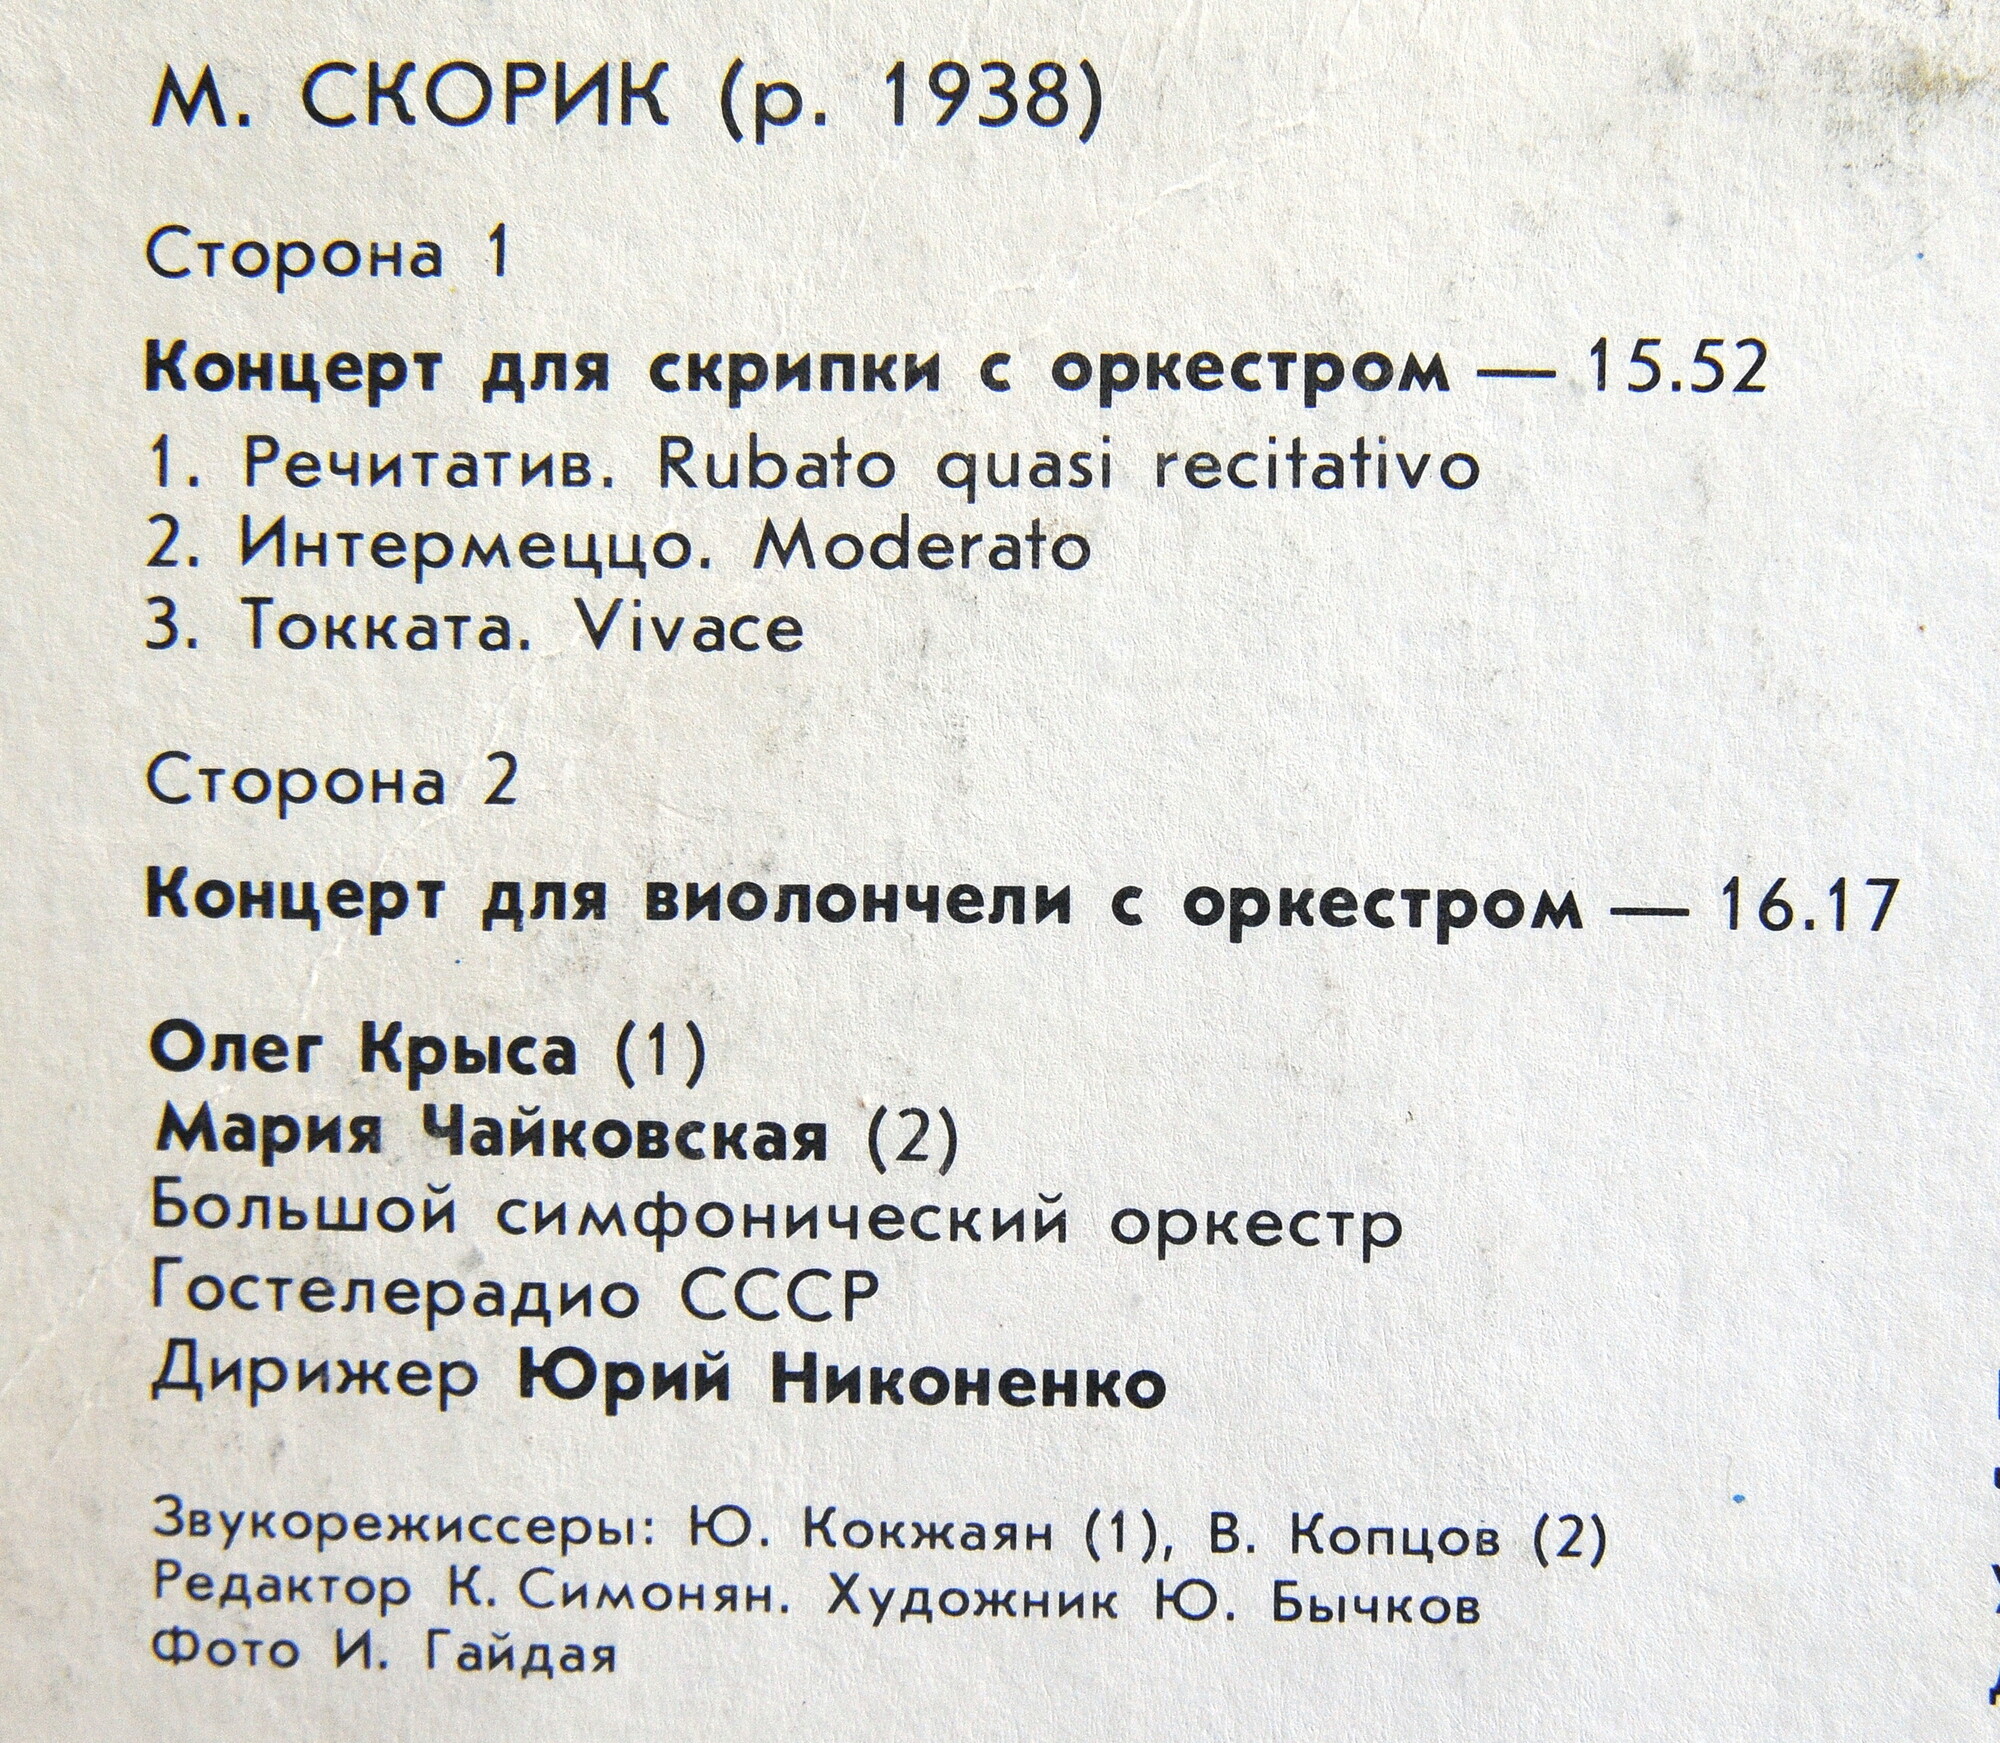 М. СКОРИК (1938)